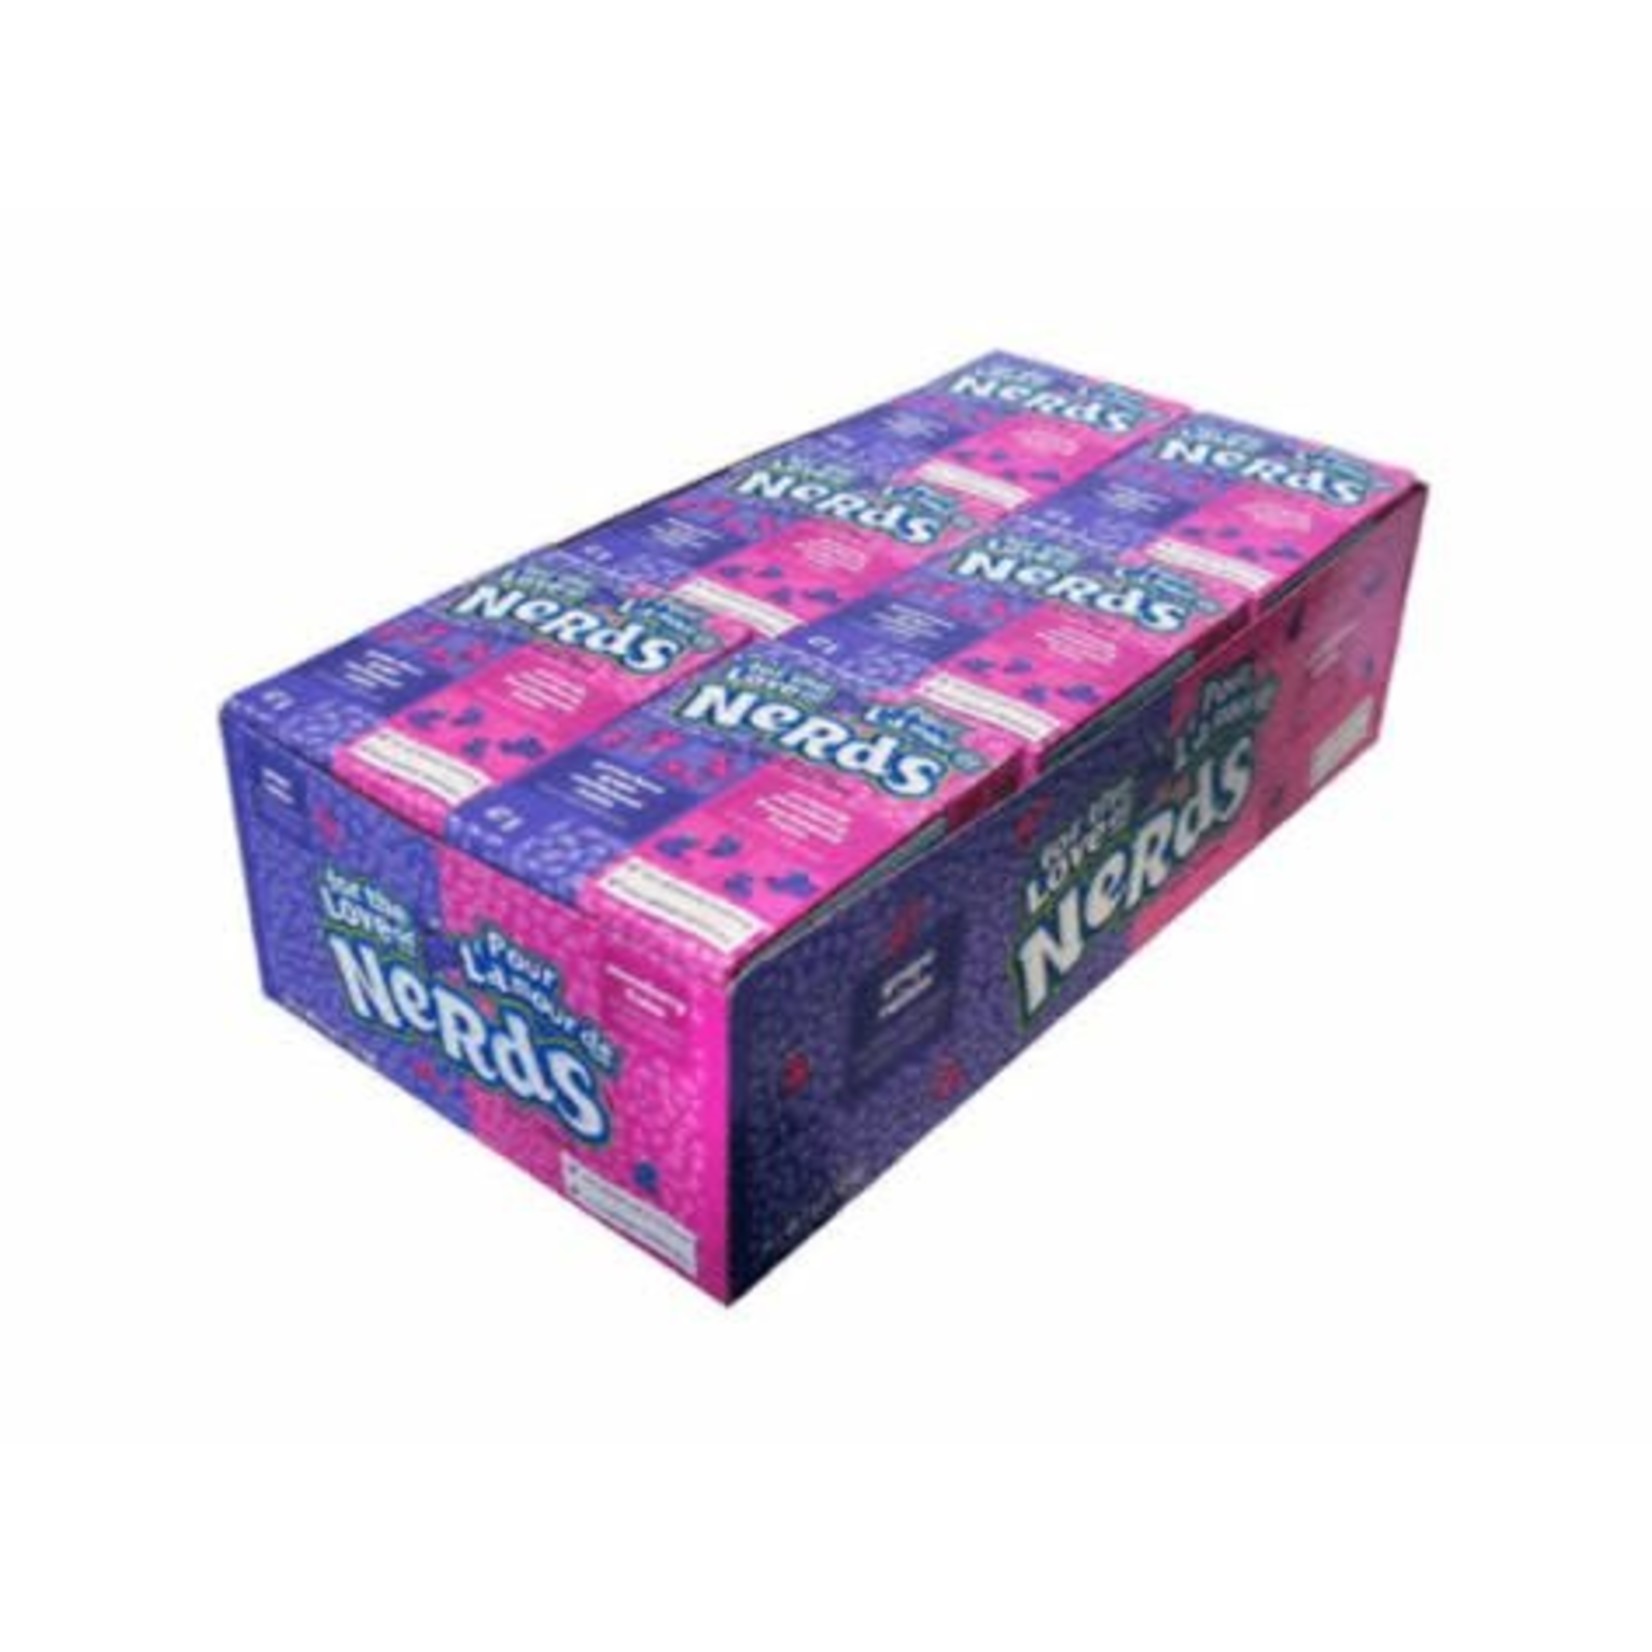 Nerds Grape & Strawberry 24 Packs